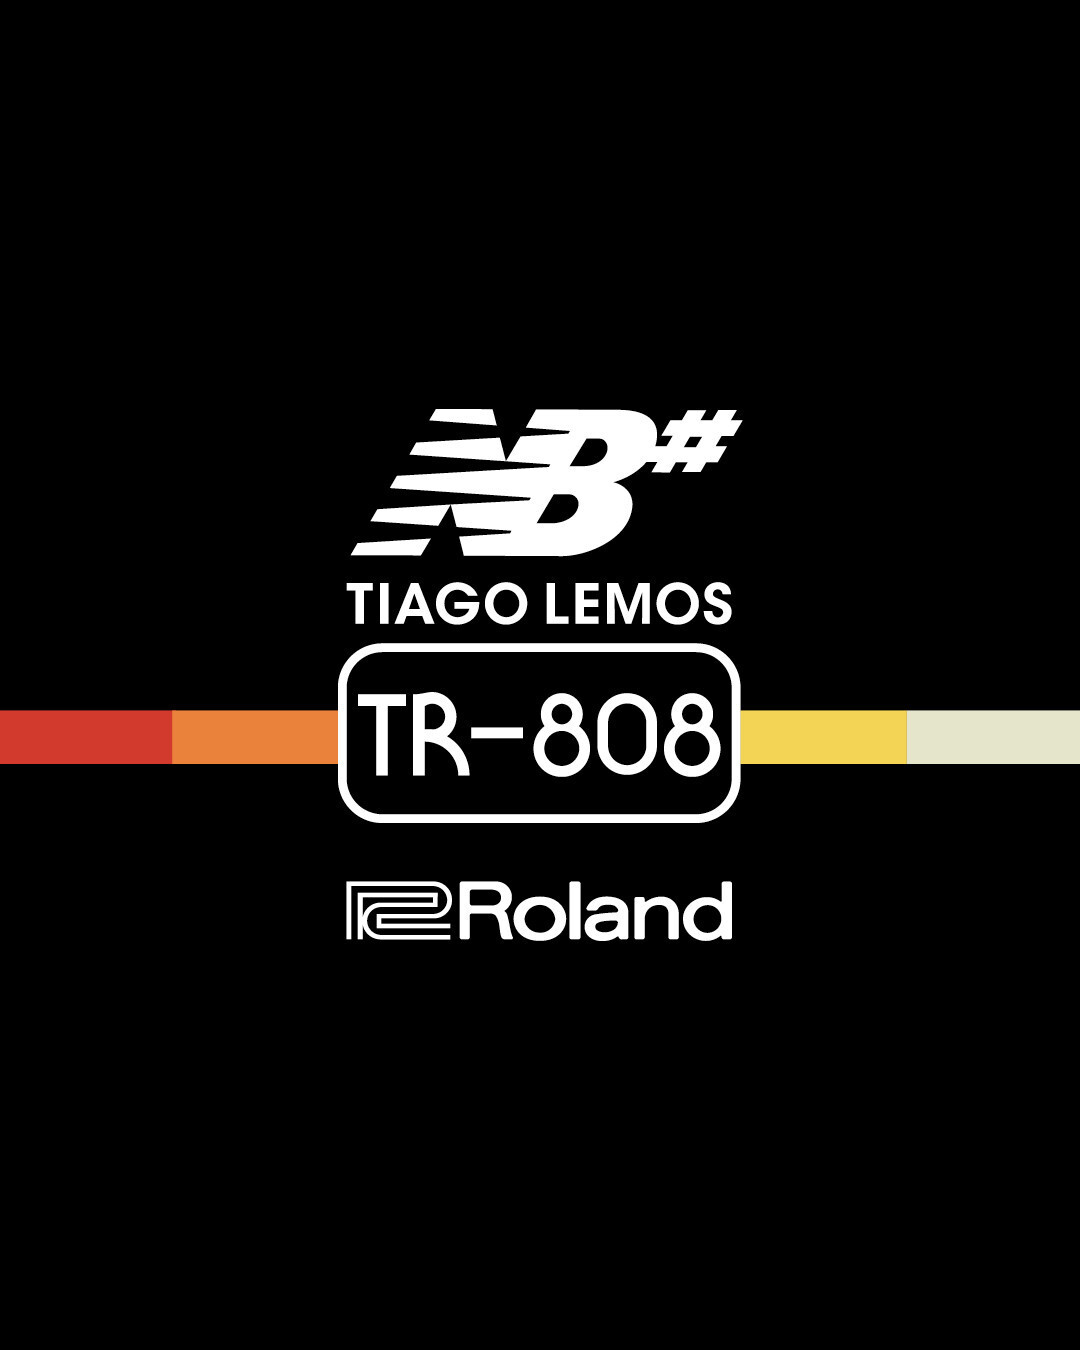 ローランドとニューバランス ヌメリックのコラボによる
リズムマシン「TR-808」モチーフのスニーカーを発表